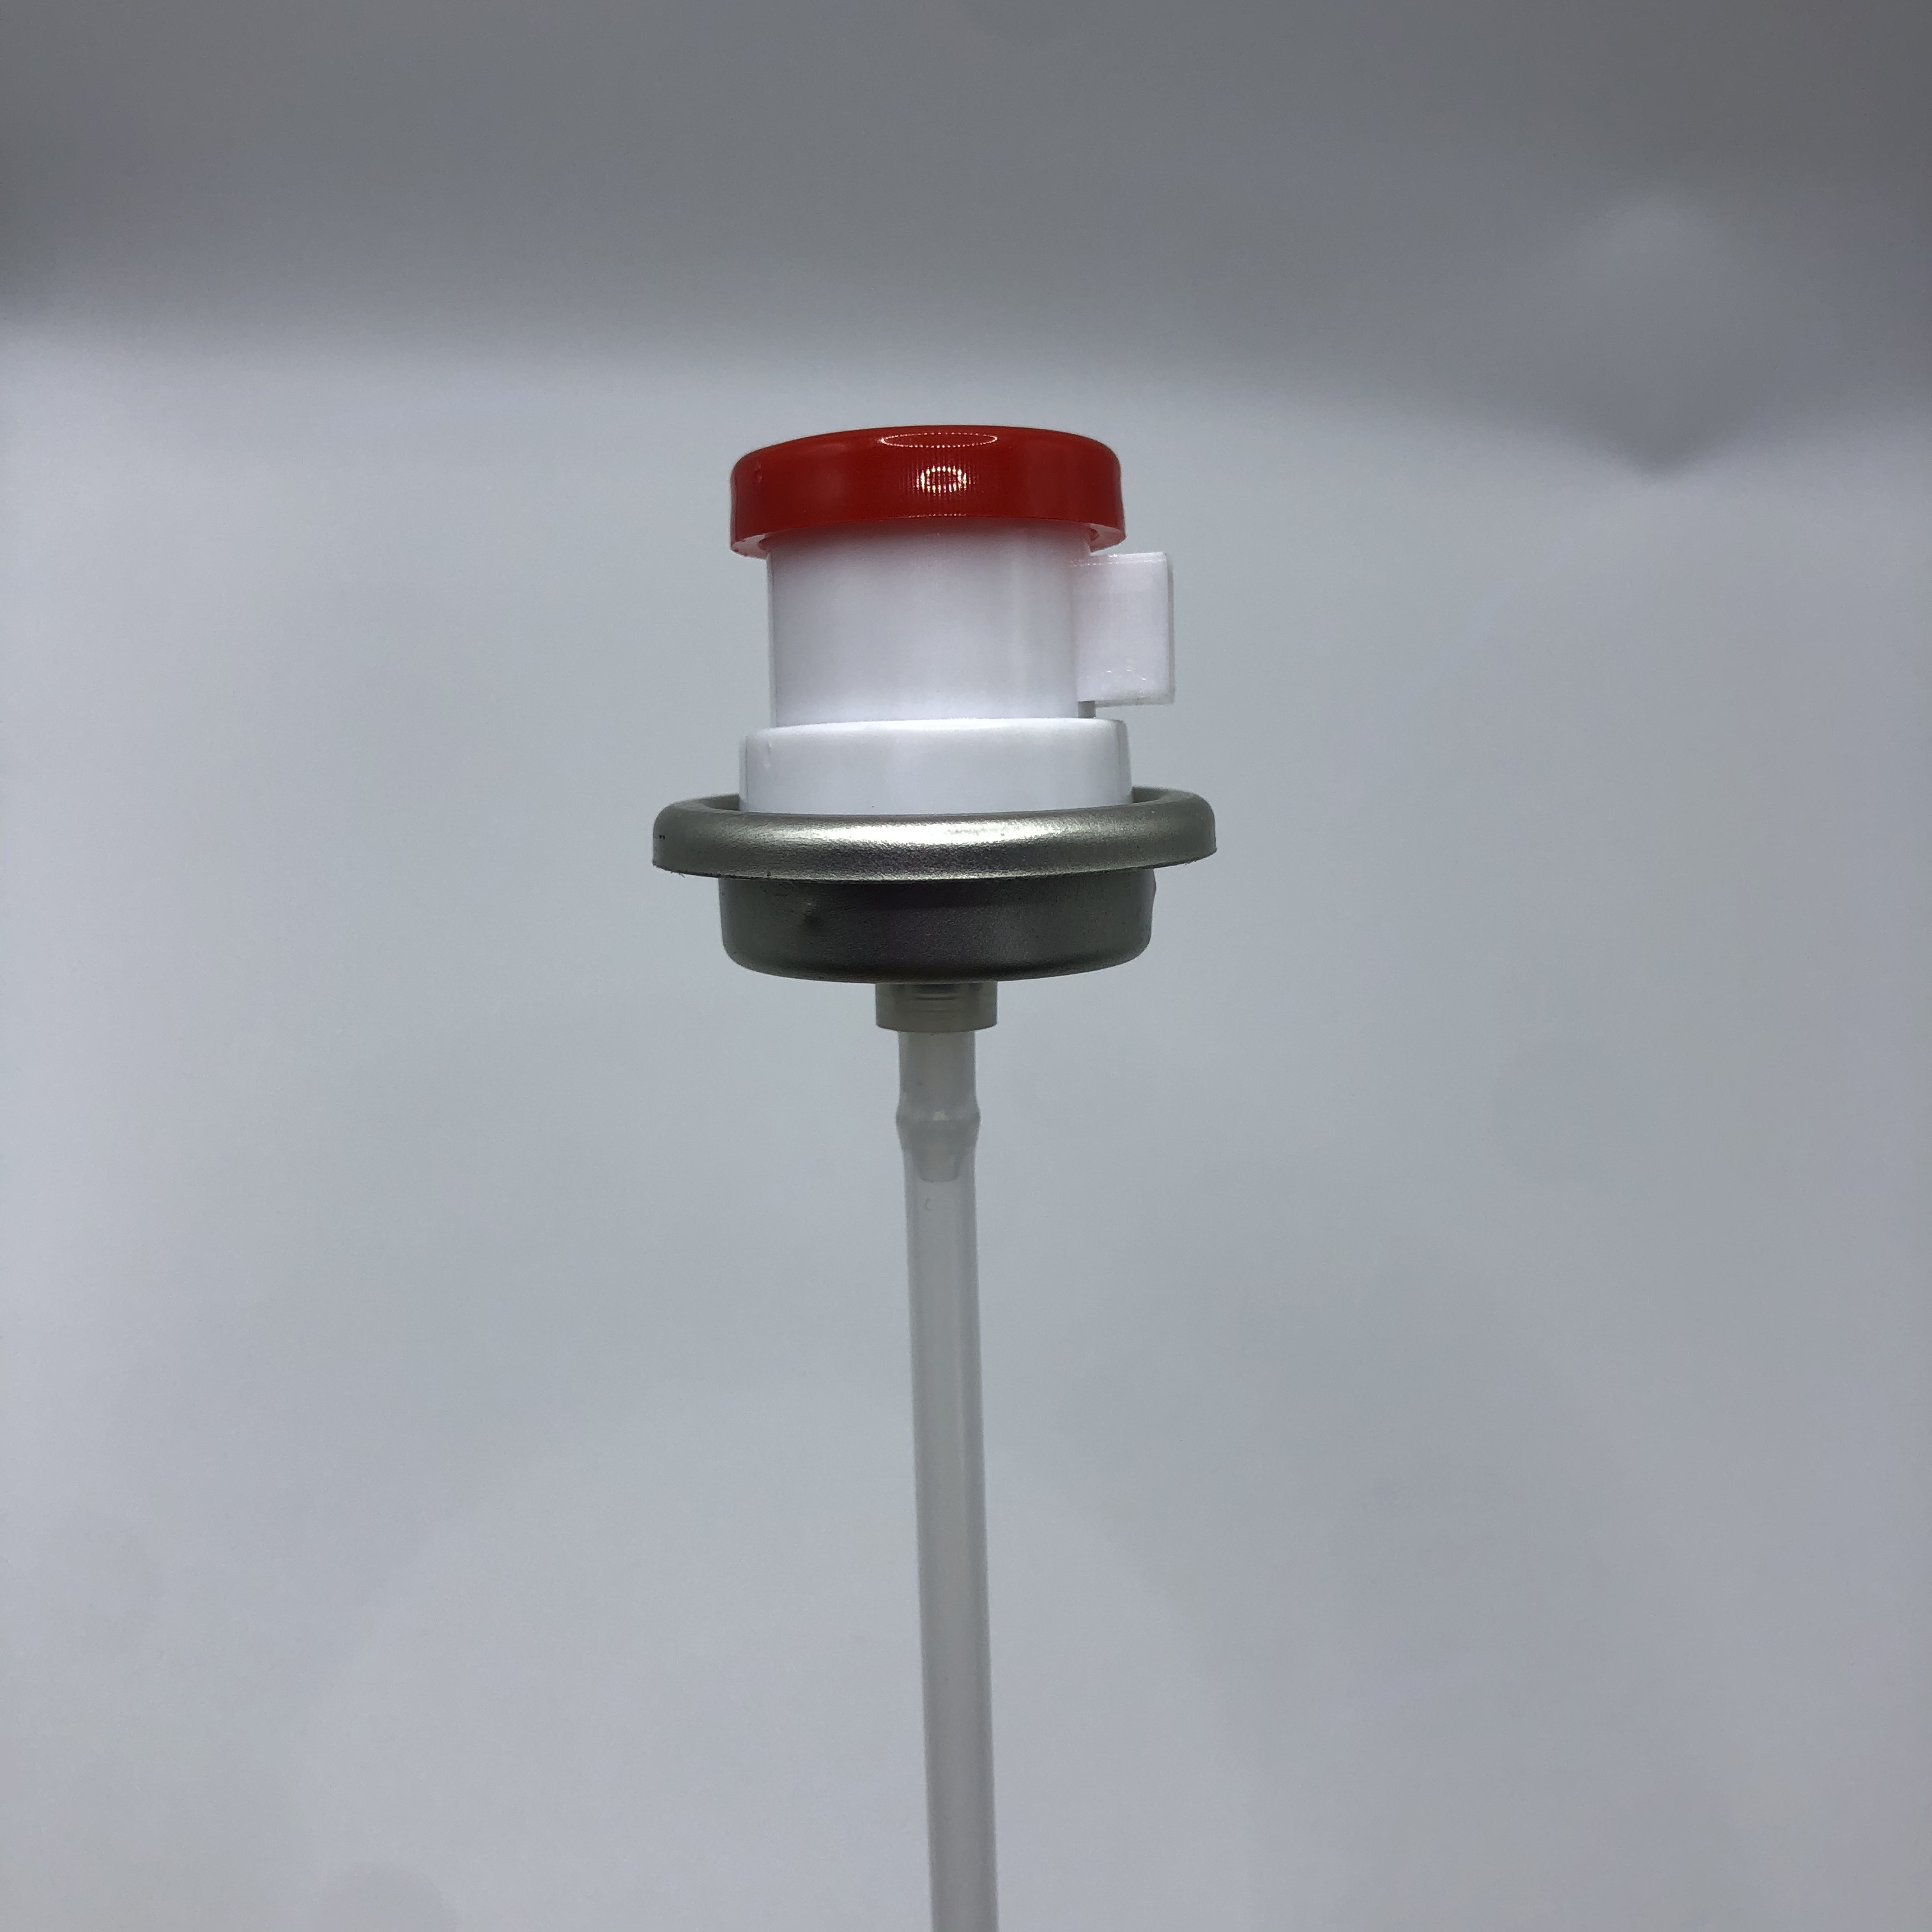 Průmyslový aerosolový dávkovač s rozprašovacím ventilem pro velké zatížení pro komerční aplikace